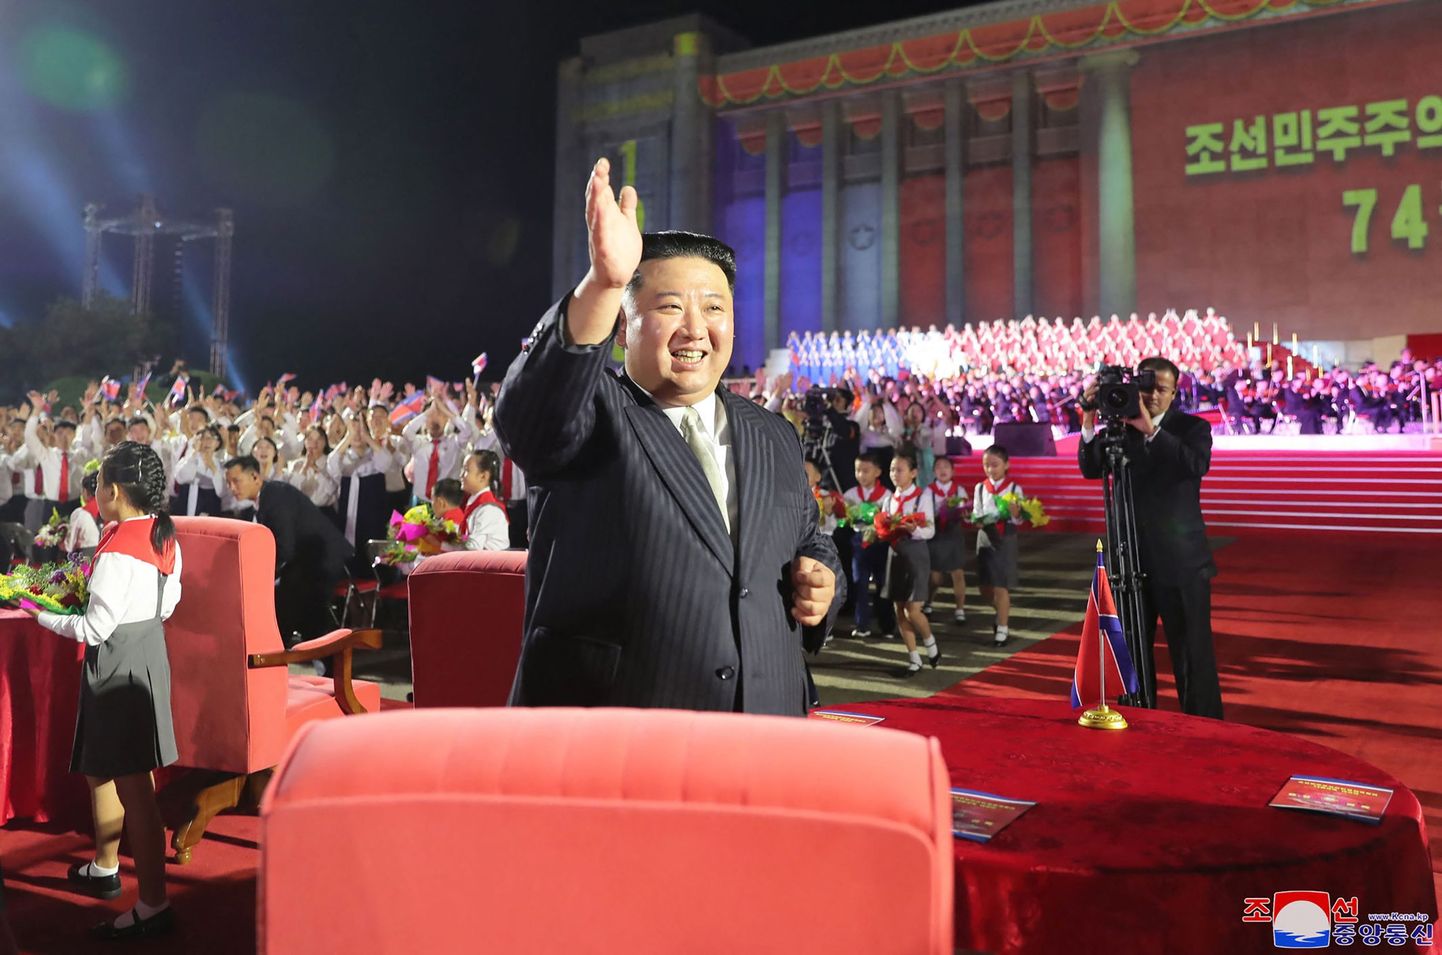 Põhja-Korea liider Kim Jong-un 8. septembril 2022 Pyongyangis riigi asutamise 74. aastapäeva tähistamisel